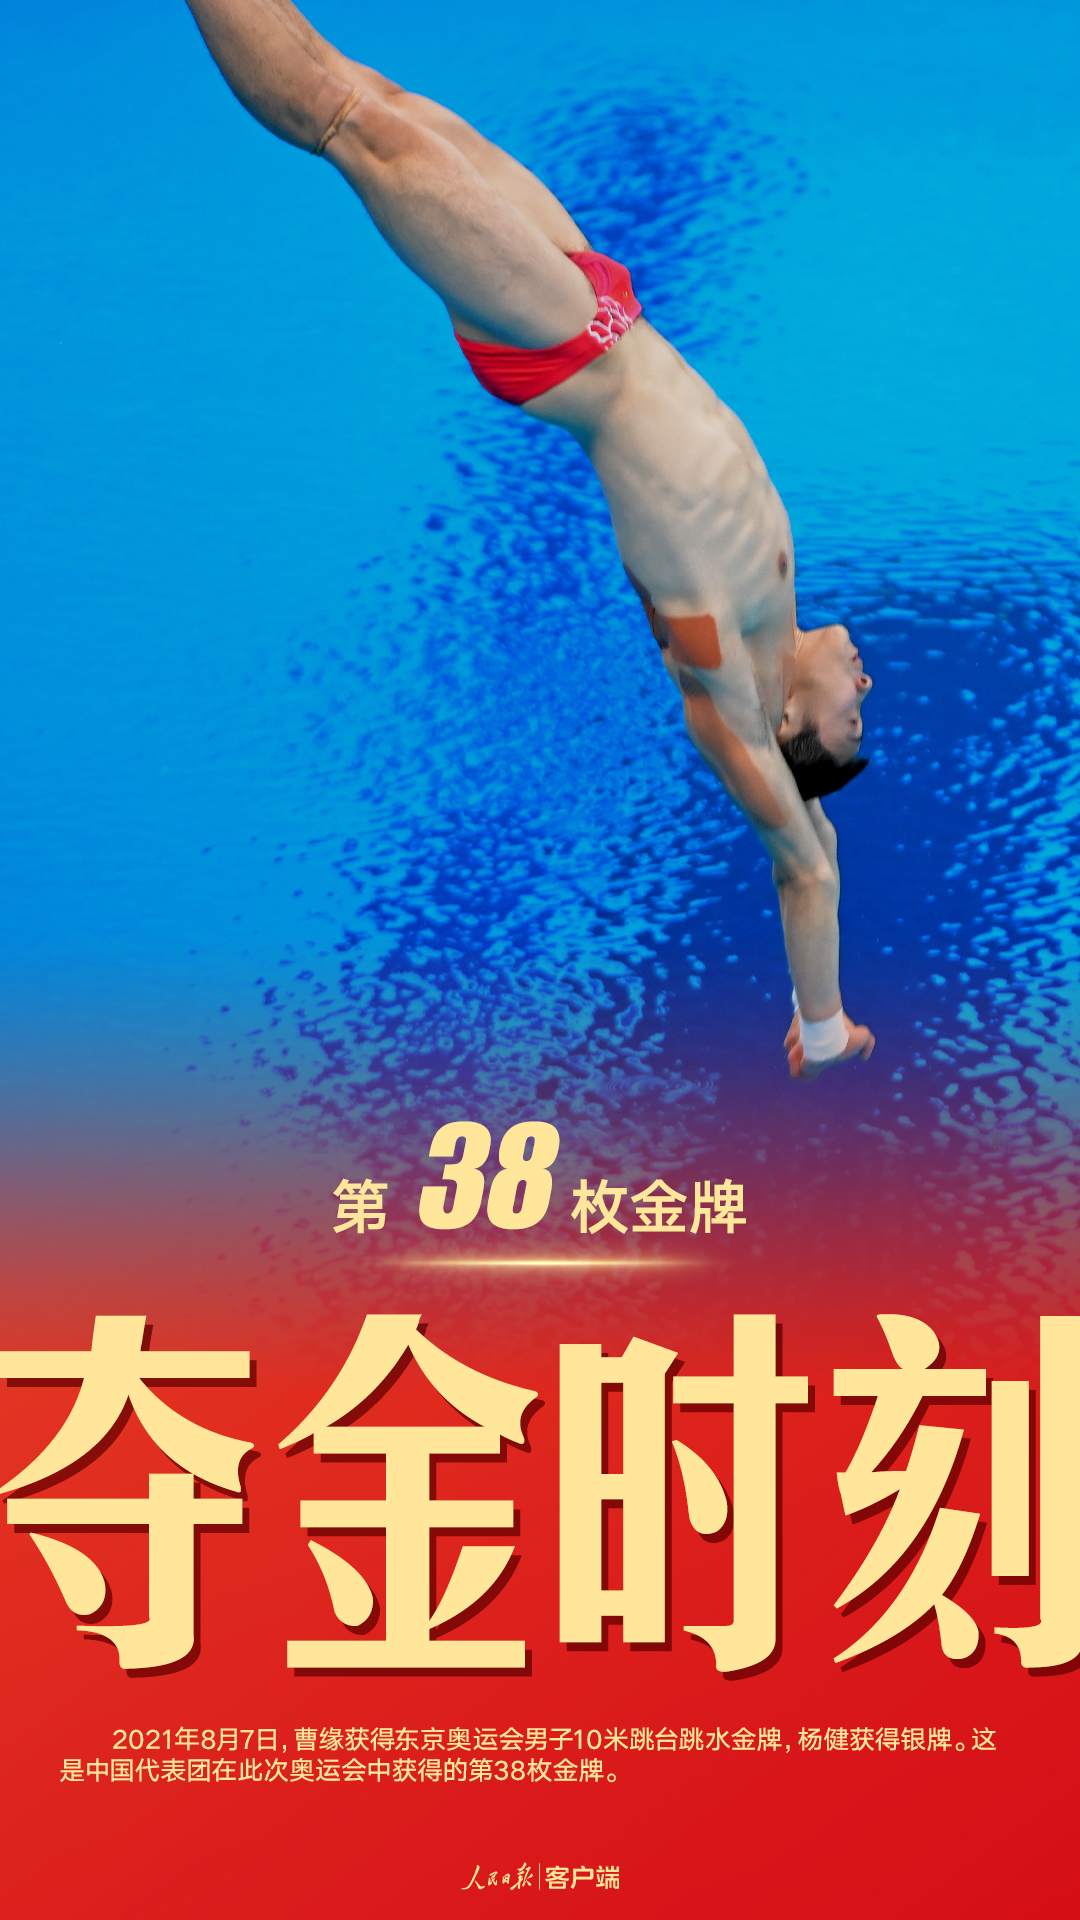 曹缘杨健包揽跳水男子10米台冠亚军